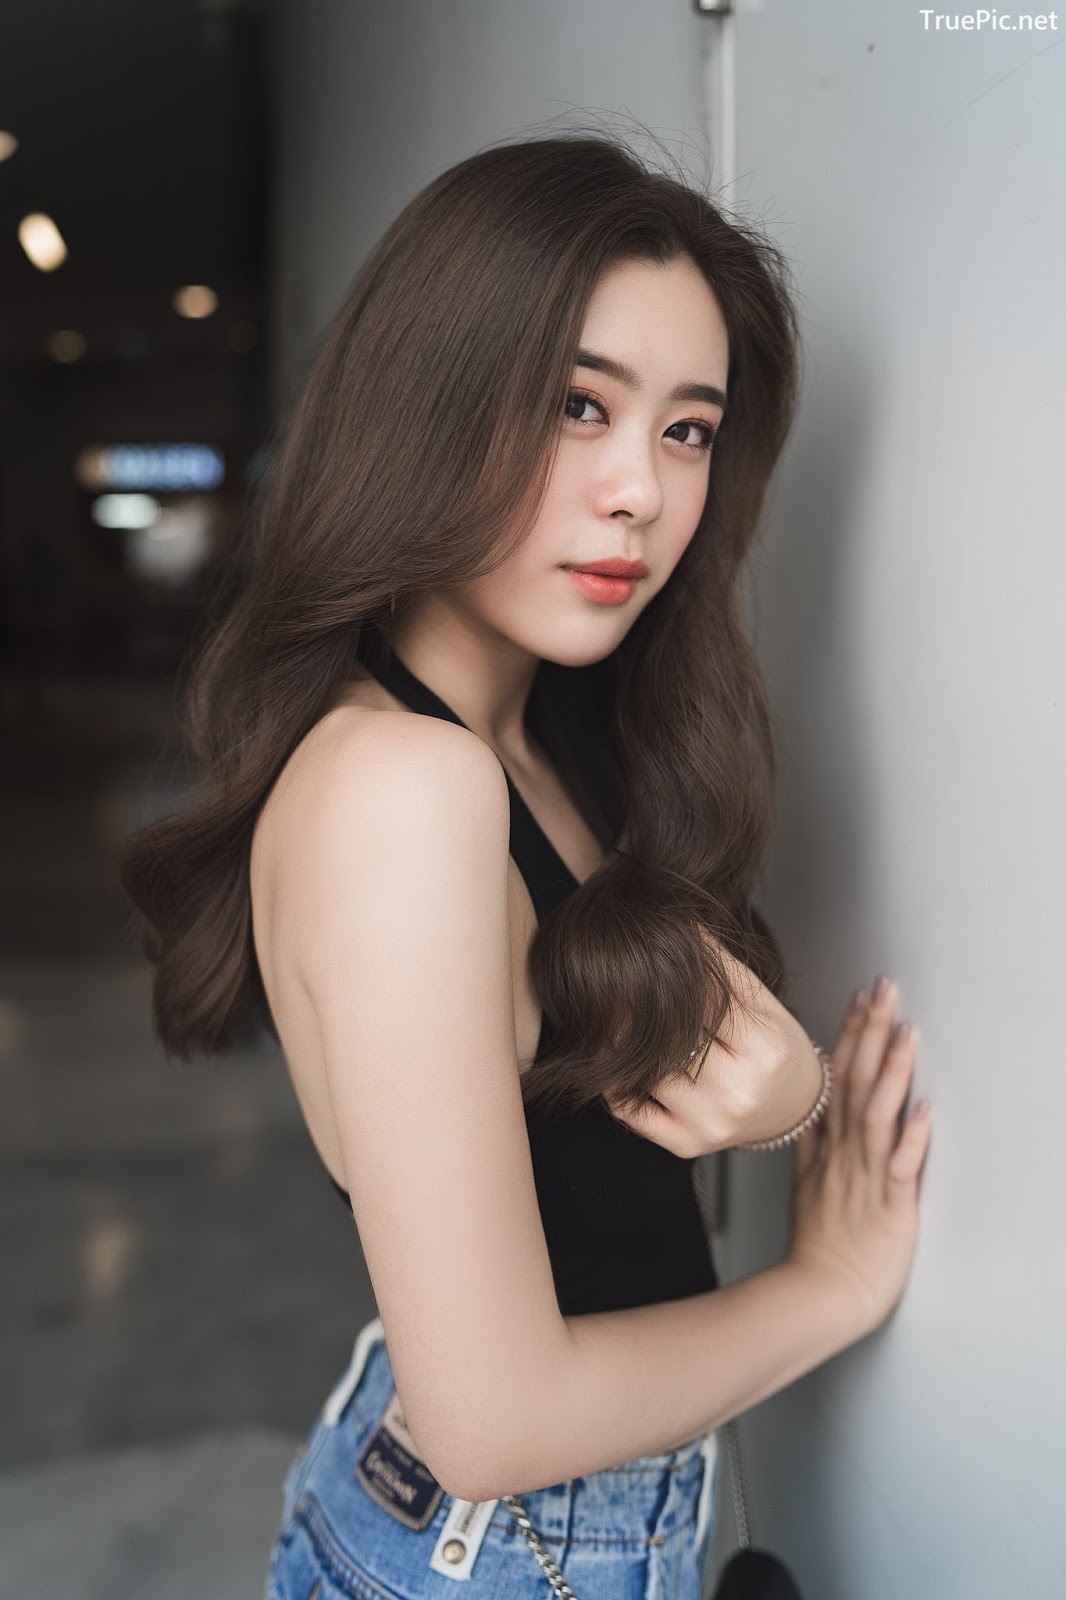 Thailand Model - Saralee Prasitdumrong - image photo photo